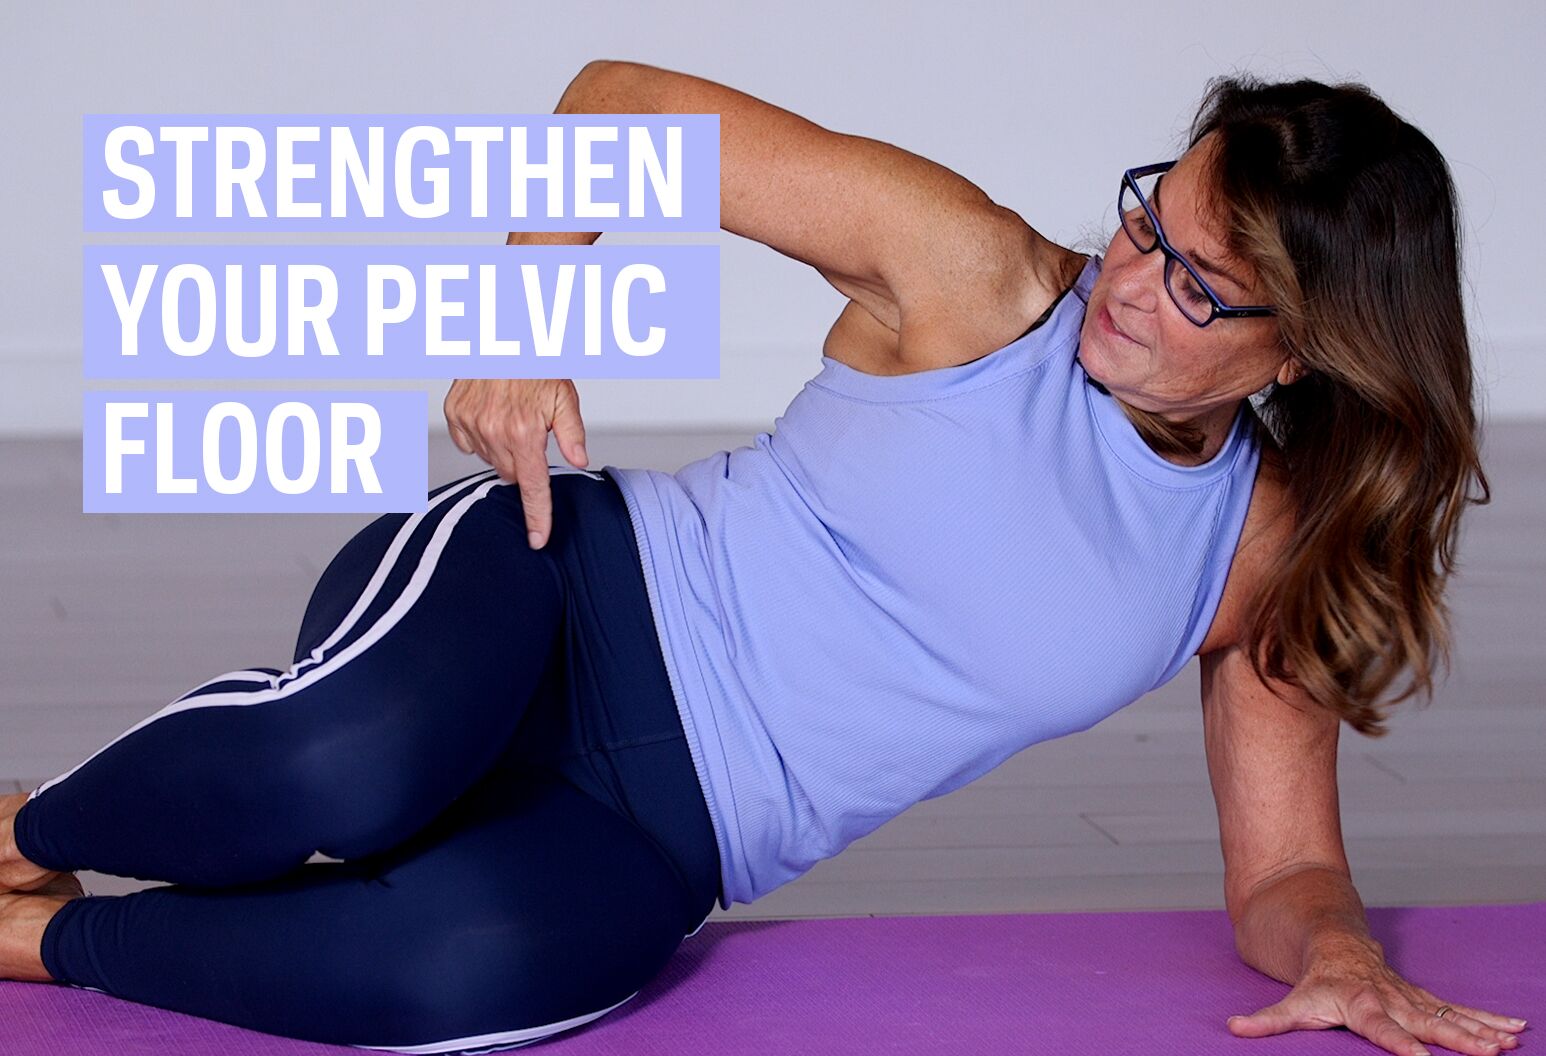 Pelvic Floor Exercises That Work